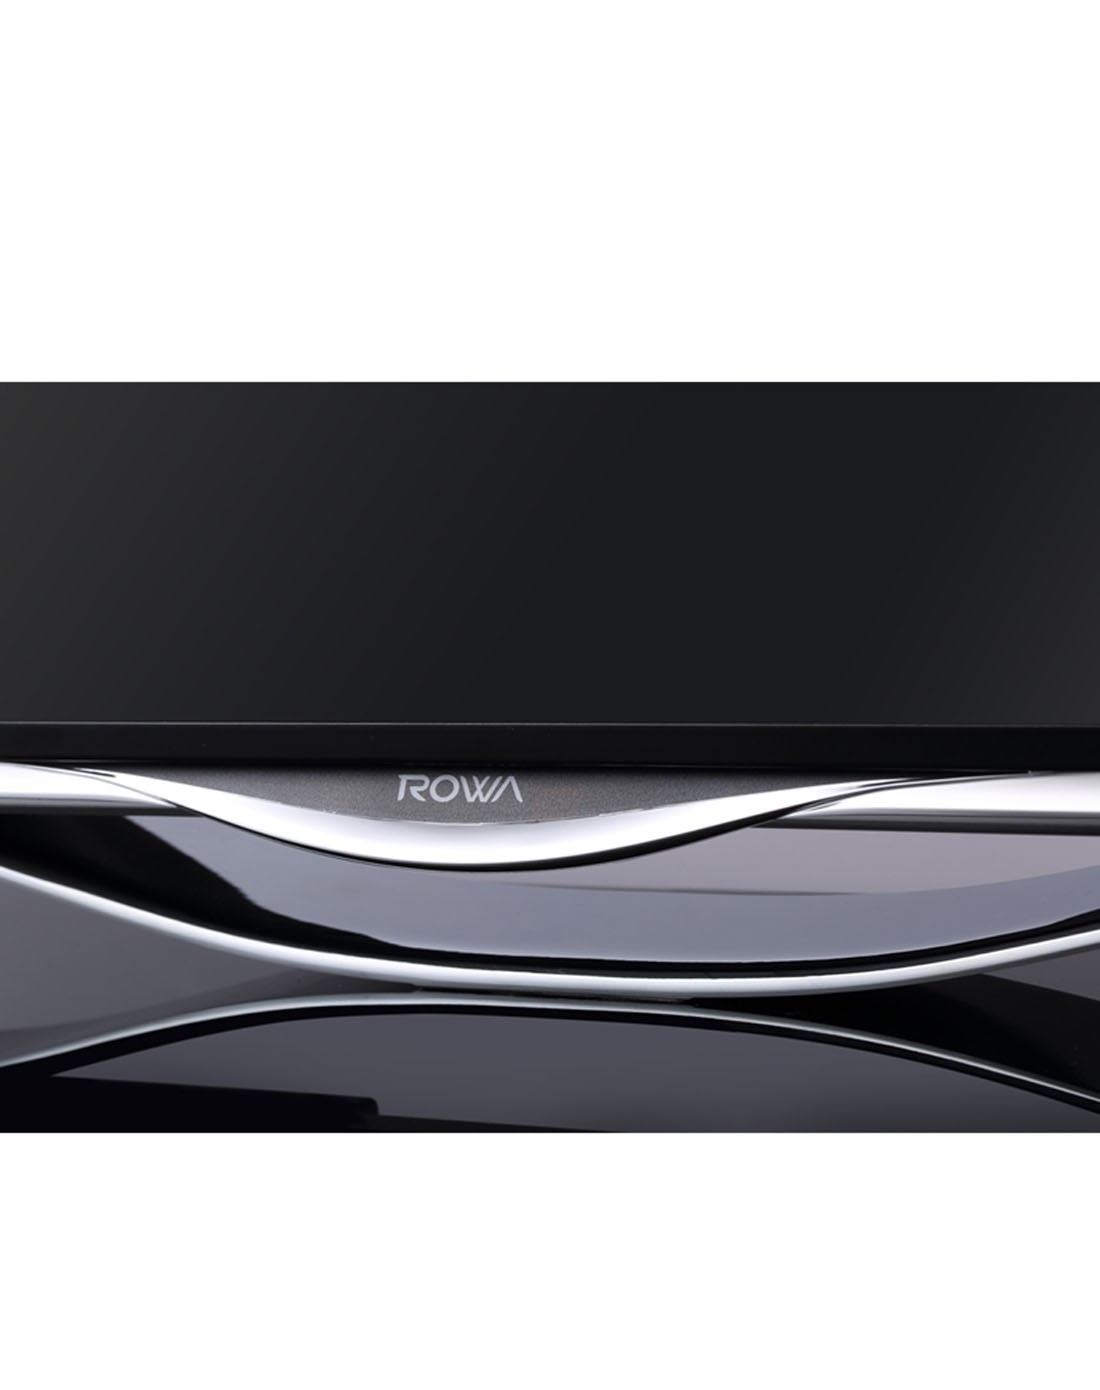 乐华ROWA电视专场55寸4K超高清安卓4.0